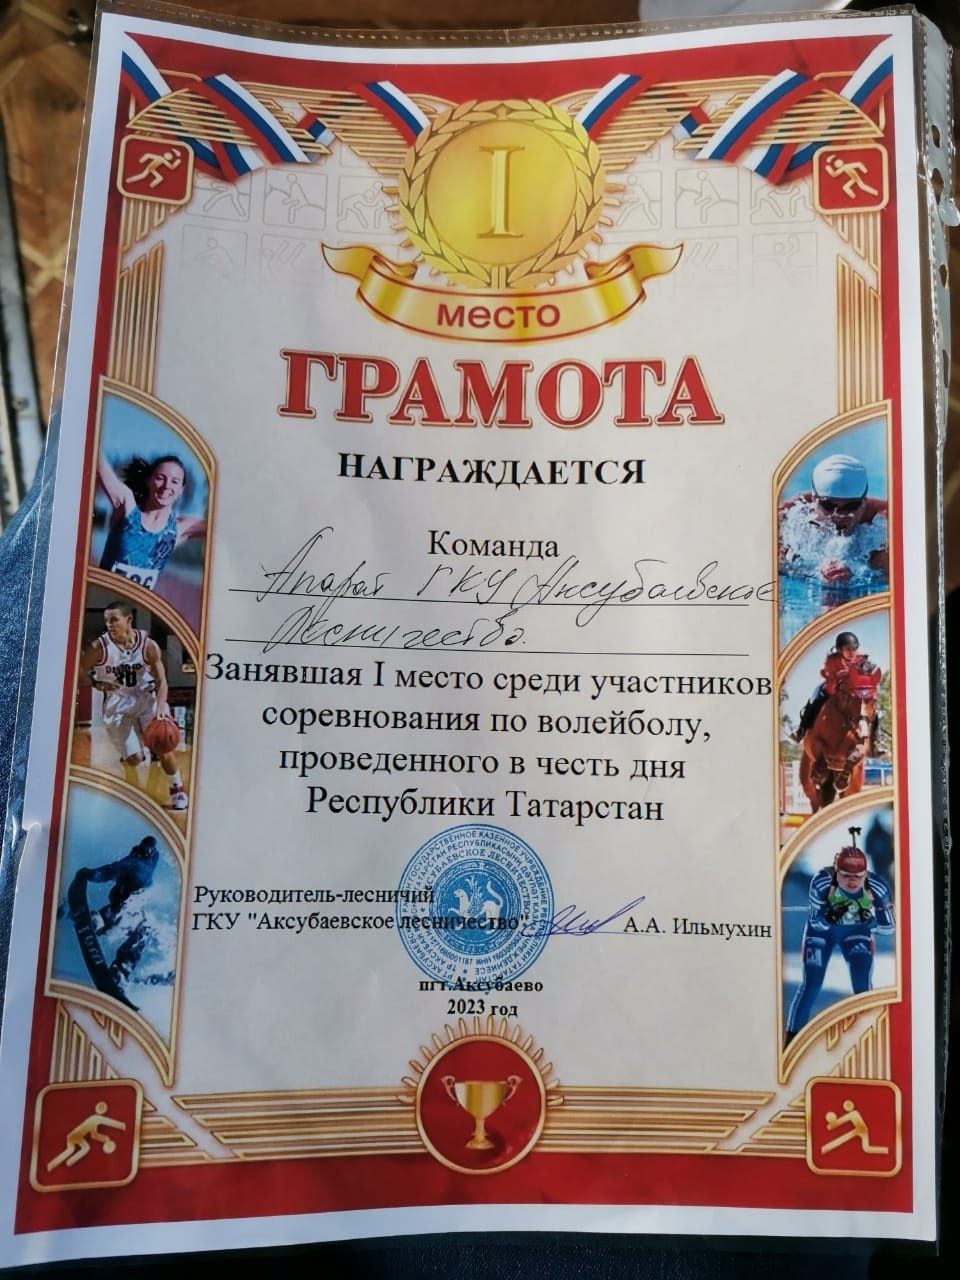 Аксубай урманчылыгында “Татарстан Республикасы көне” бәйрәме уңаеннан профсоюз чаралары кысаларында волейбол буенча ярышлар үткәрделәр